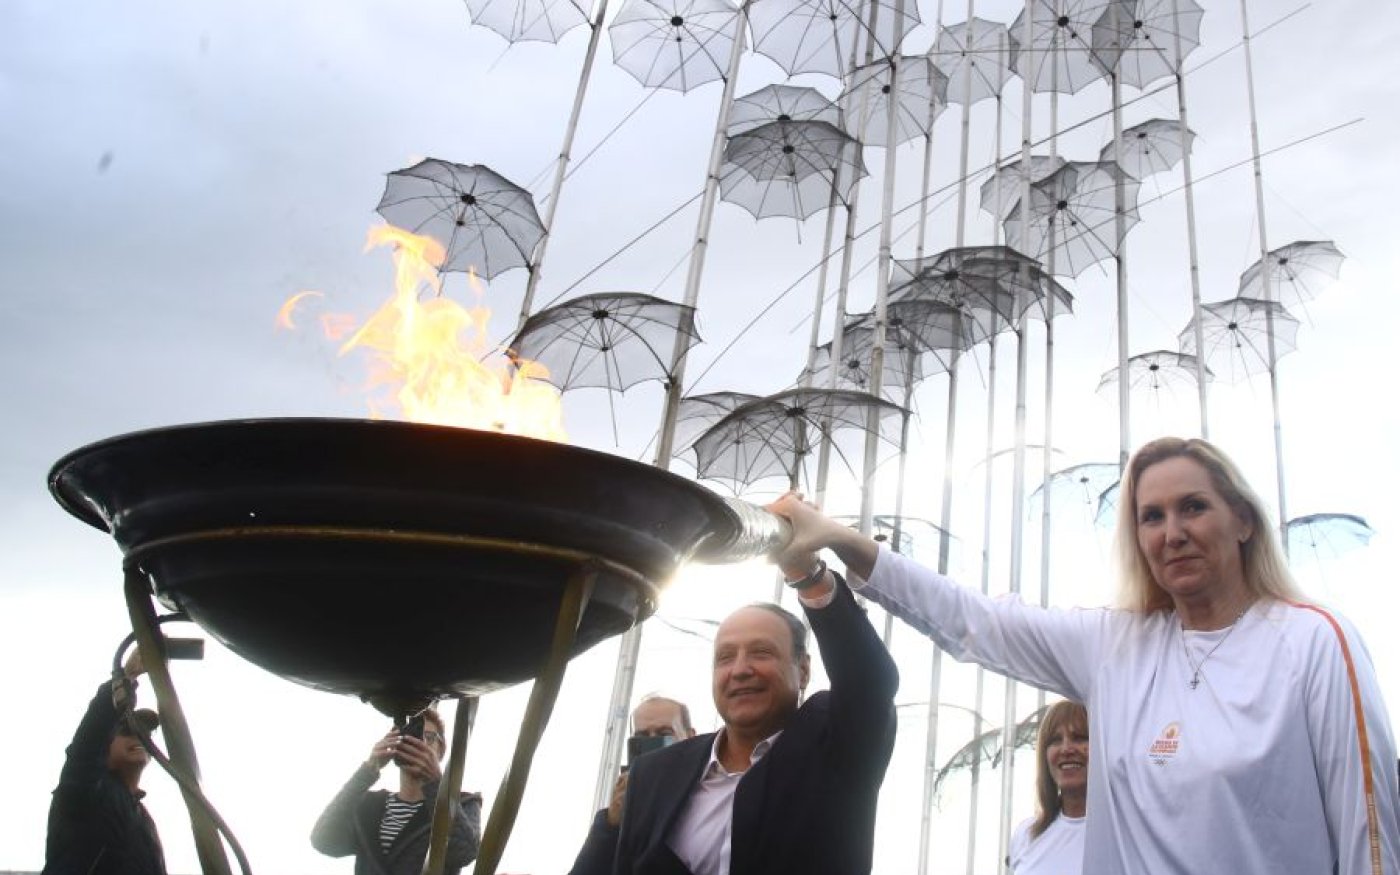 Φωτό ημέρας:  Η στιγμή που η Ολυμπιακή Φλόγα ανάβει στις Ομπρέλες του Ζογγολόπουλου - ΜΑΡΚΟΣ_ΧΟΥΖΟΥΡΗΣ/EUROKINISSI